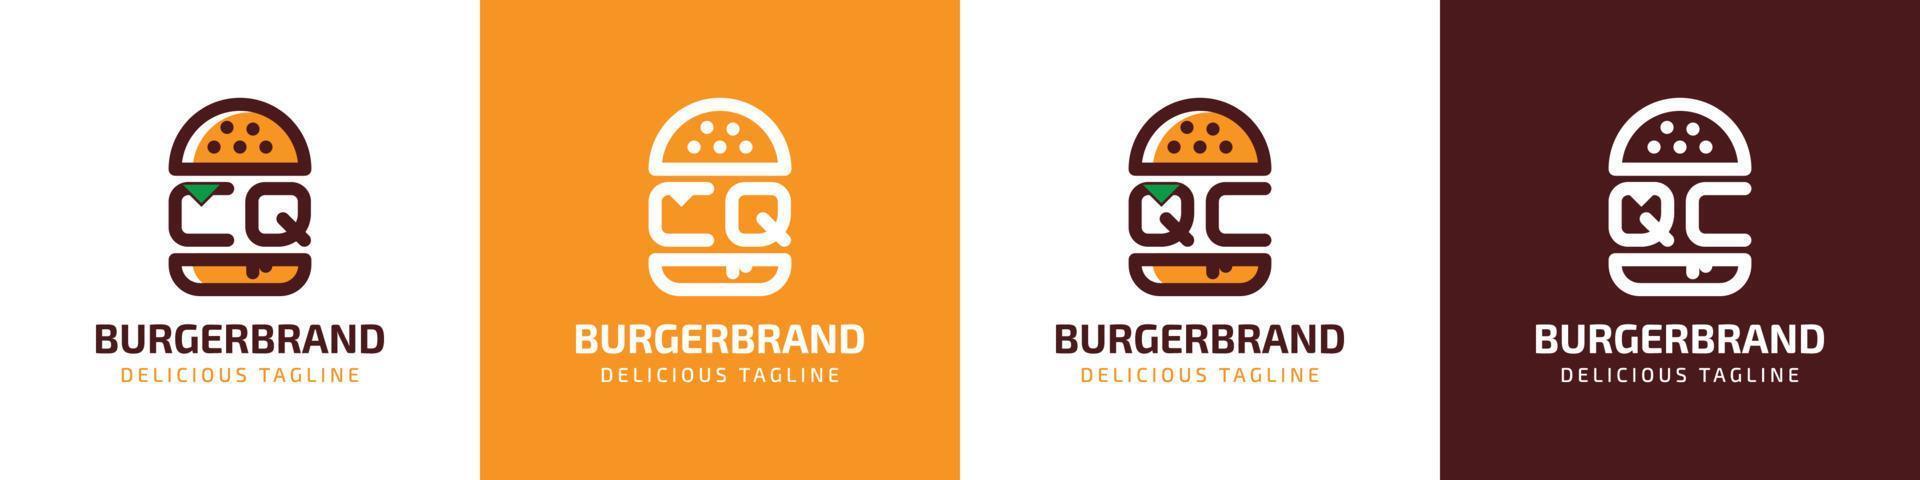 carta cq e qc hamburguer logotipo, adequado para qualquer o negócio relacionado para hamburguer com cq ou qc iniciais. vetor